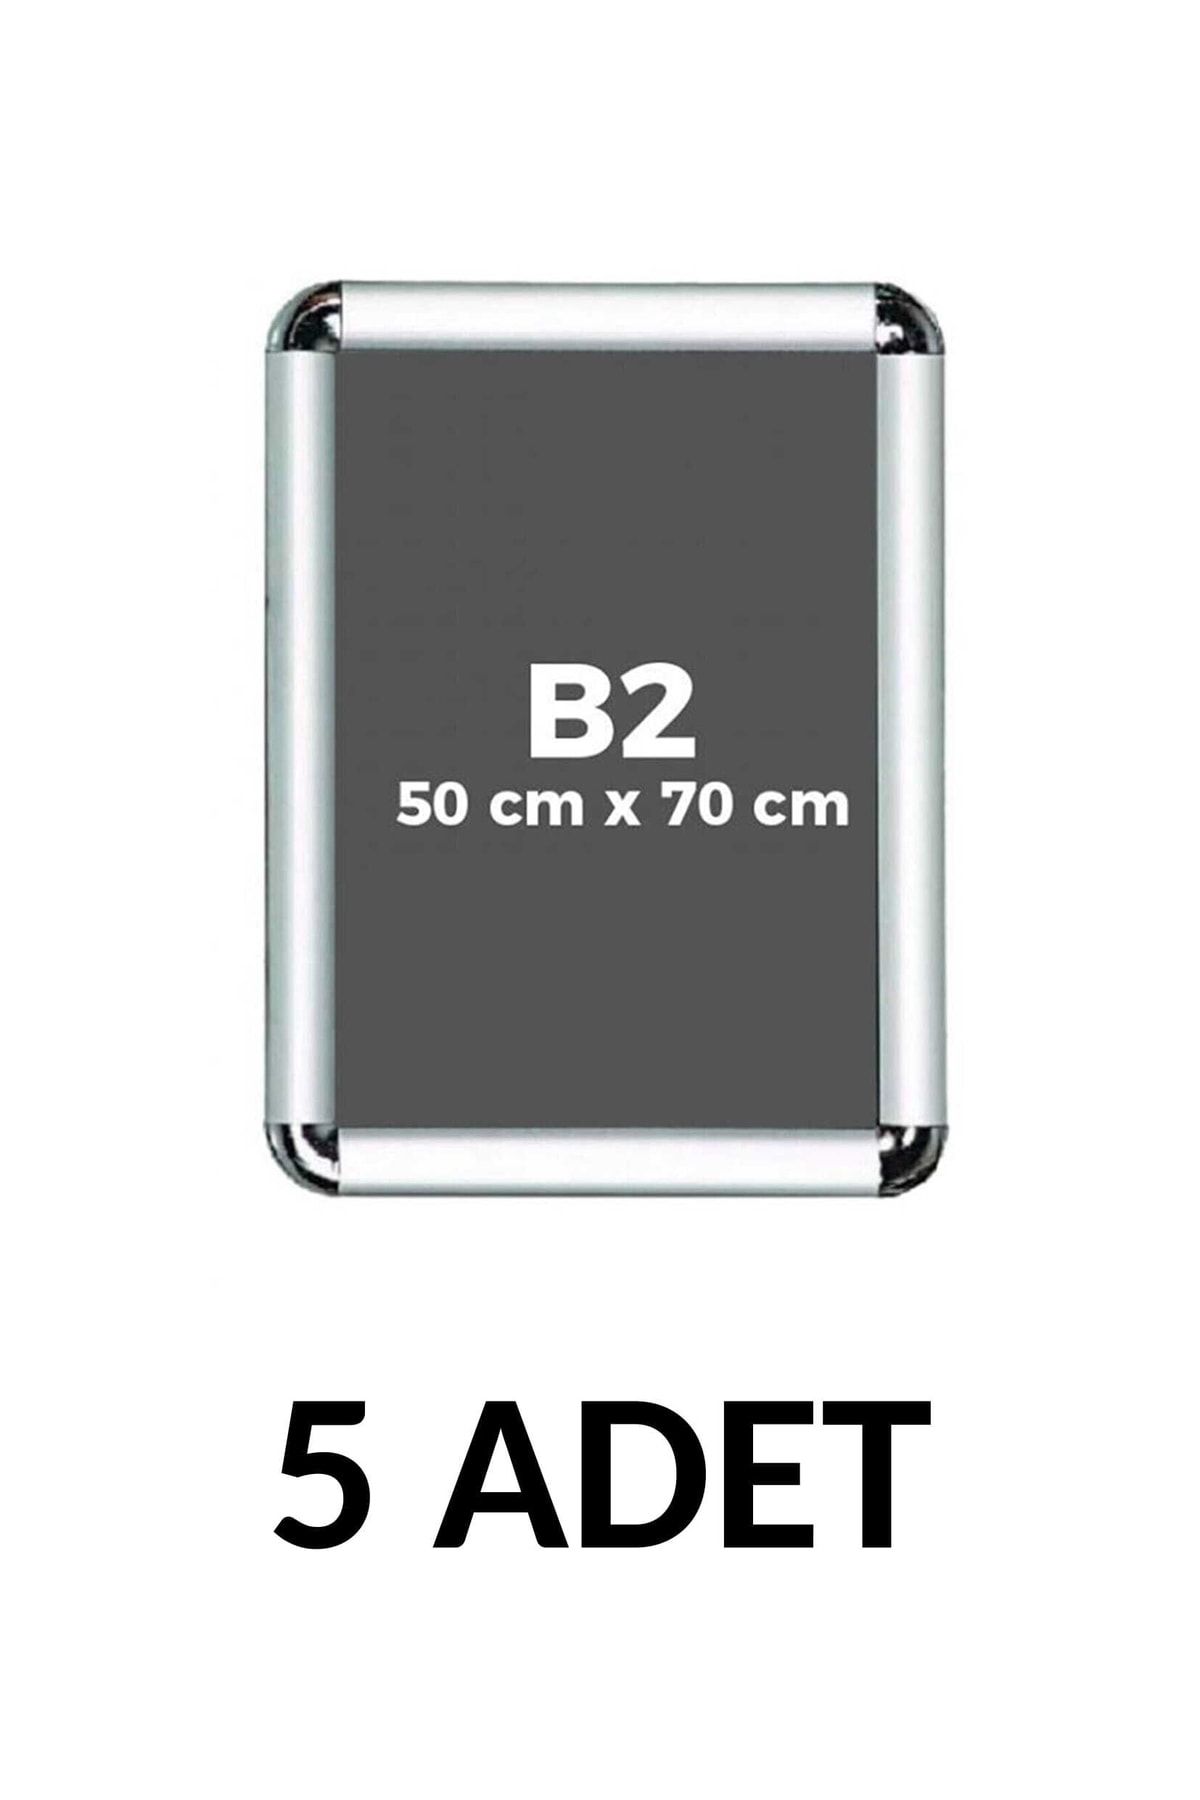 Noki 5 Adet 50x70 Cm (b2) Display Rondo Çerceve Köşeli 25 Mm